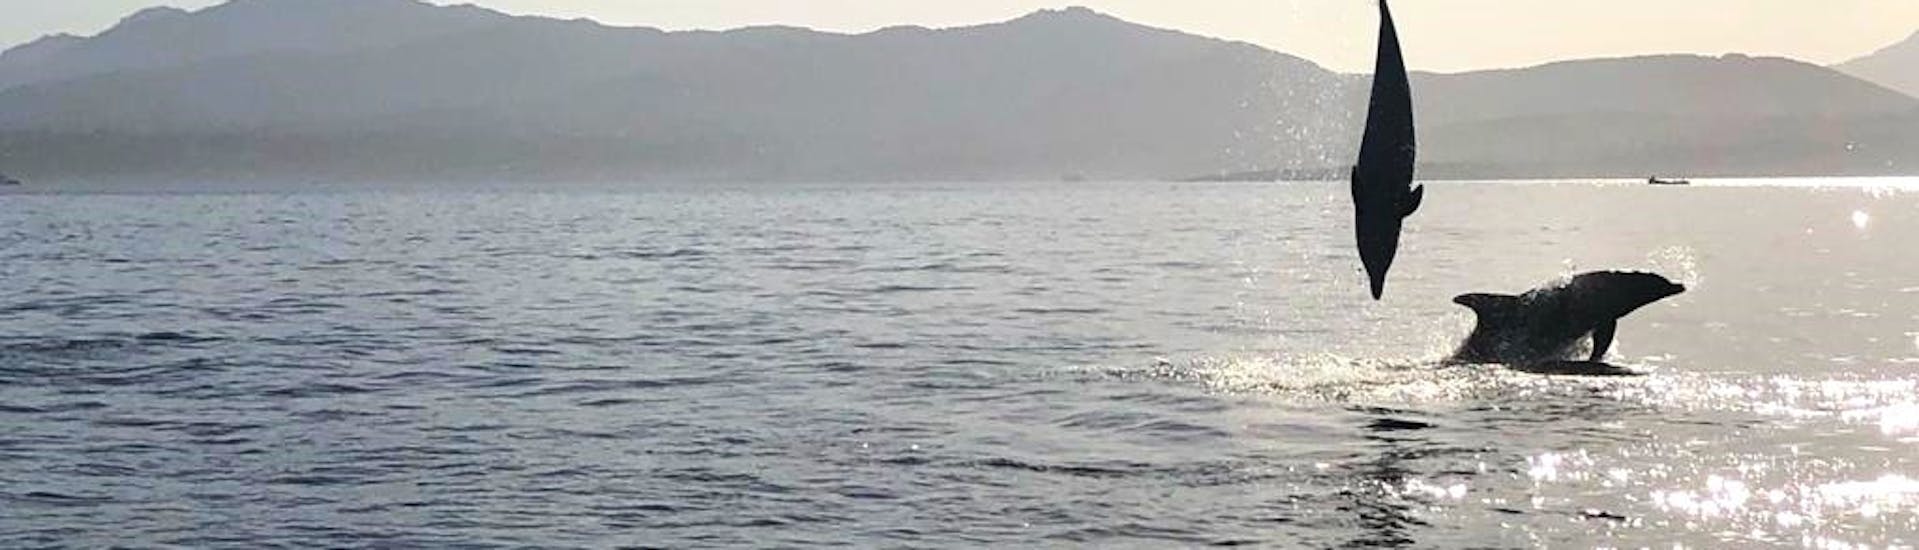 Dauphins sautant dans la mer pendant l'excursion en bateau semi-rigide à Golfo Aranci avec observation des dauphins avec DST Sardegna Golfo Aranci.